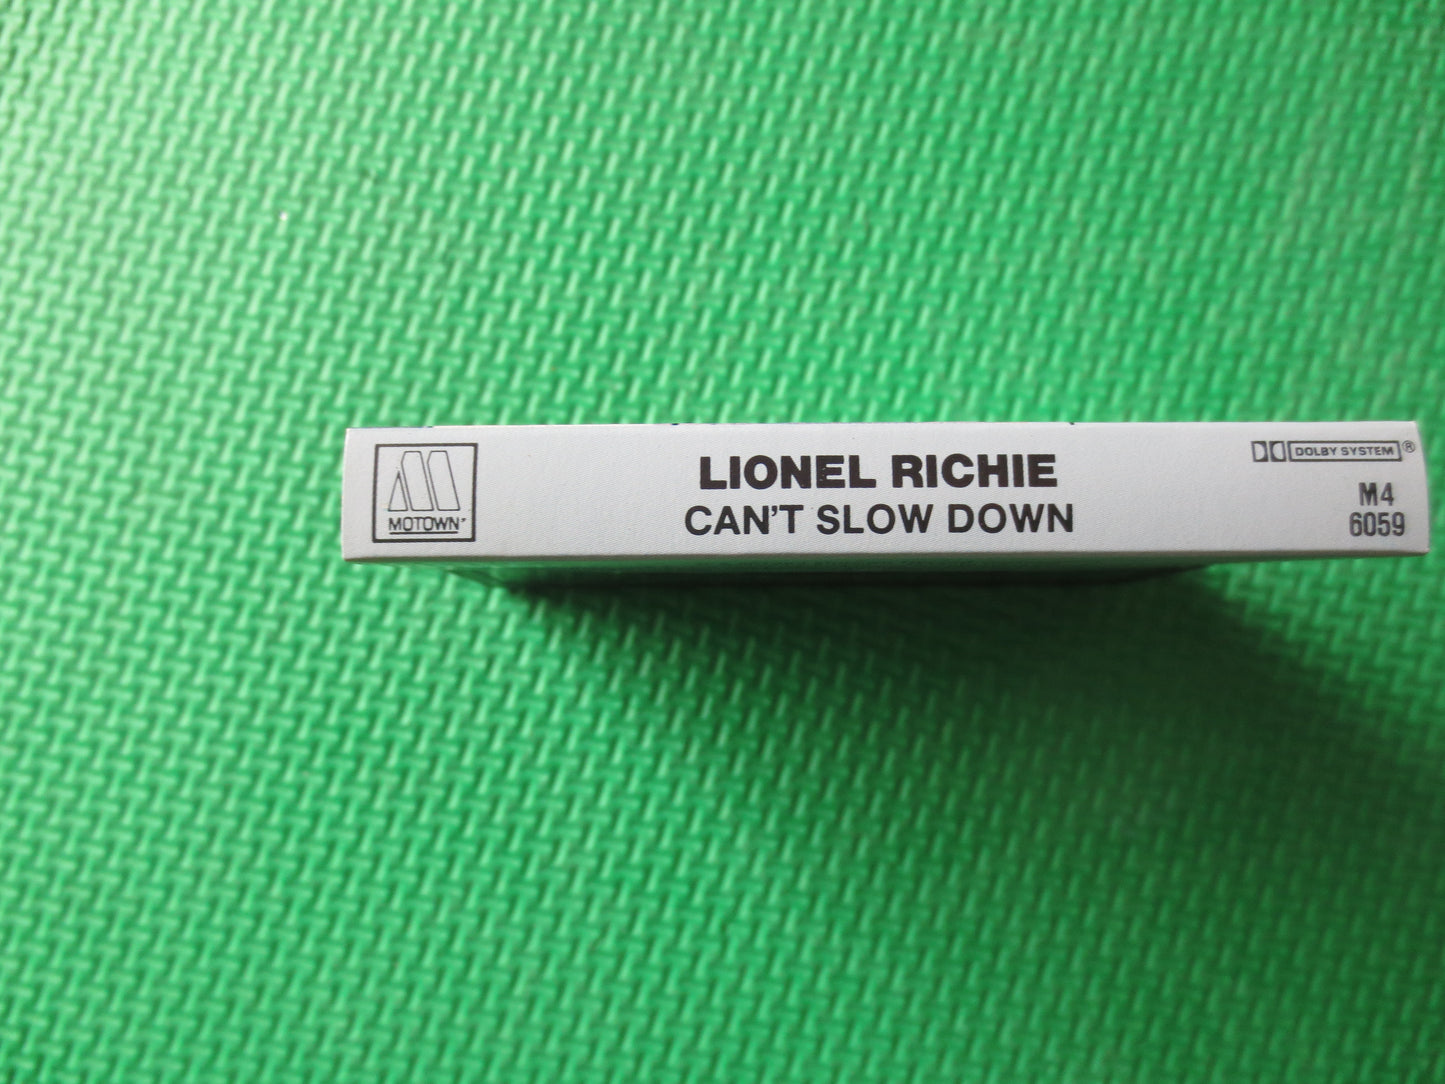 LIONEL RICHIE Tape, Can't Slow Down, Lionel Richie Album, Lionel Richie Music, Tape Cassette, Rock Cassette, 1983 Cassette